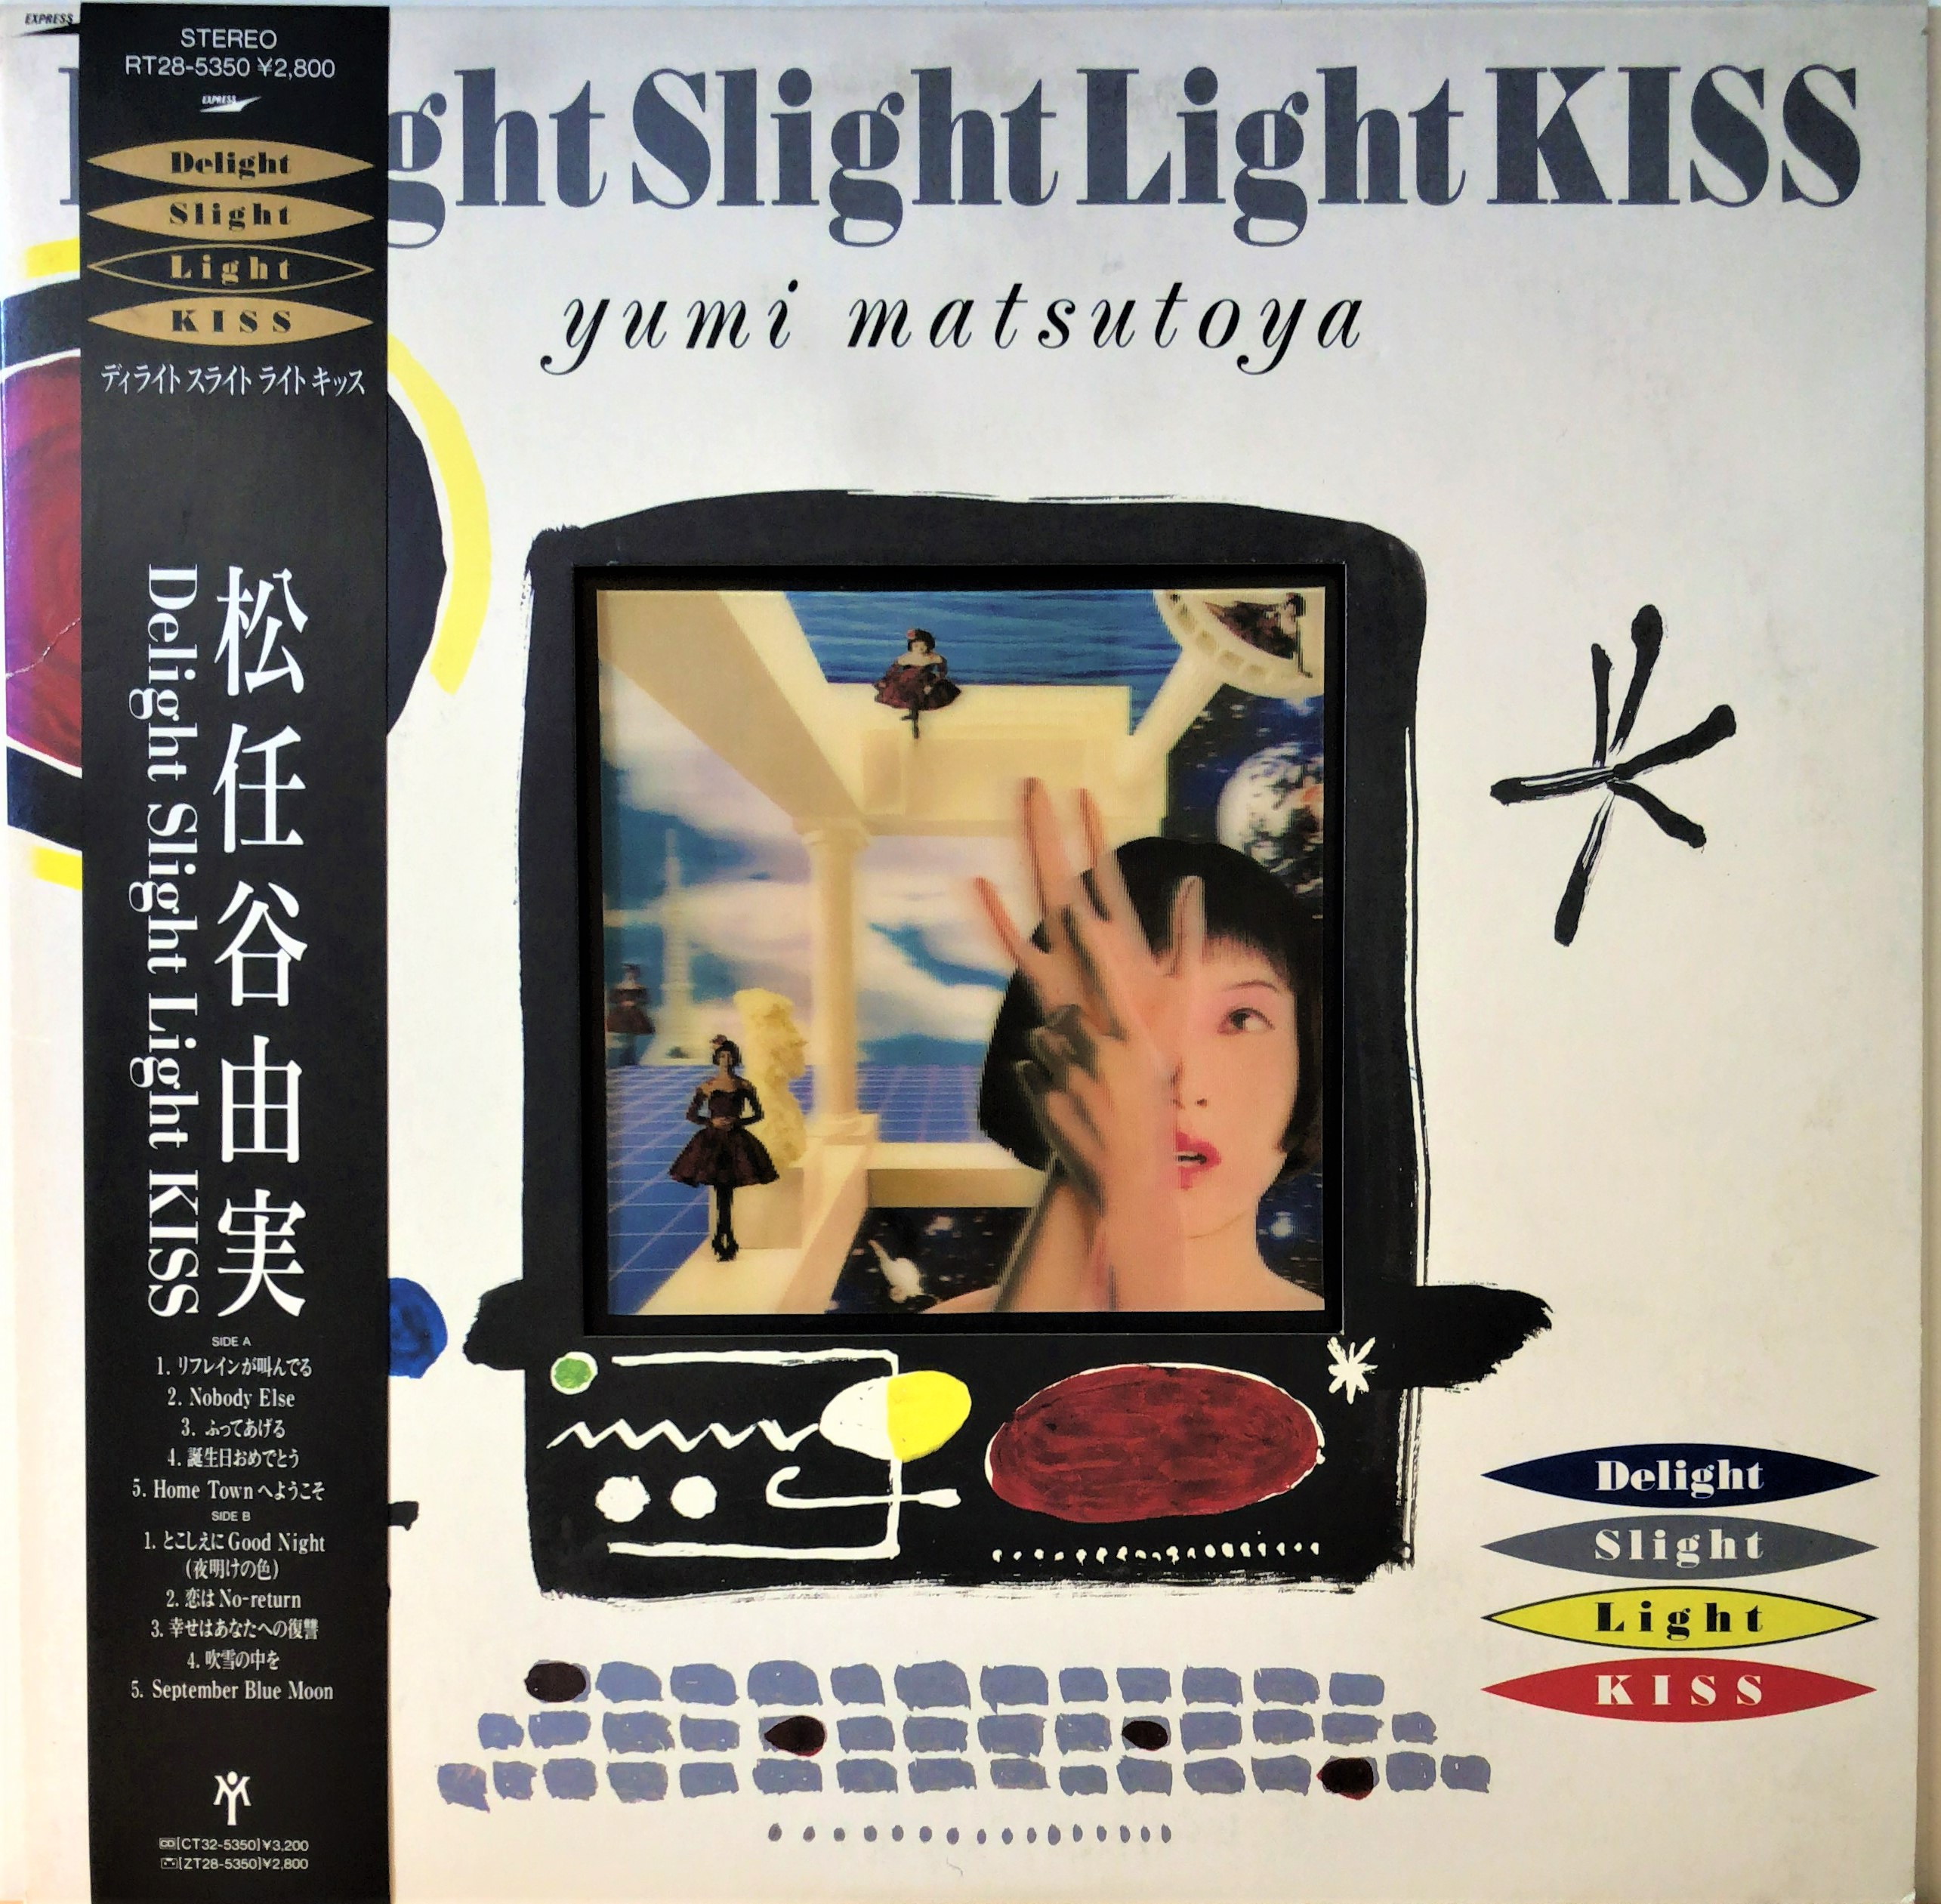 松任谷由実 Delight Slight Light Kiss レコード 美品